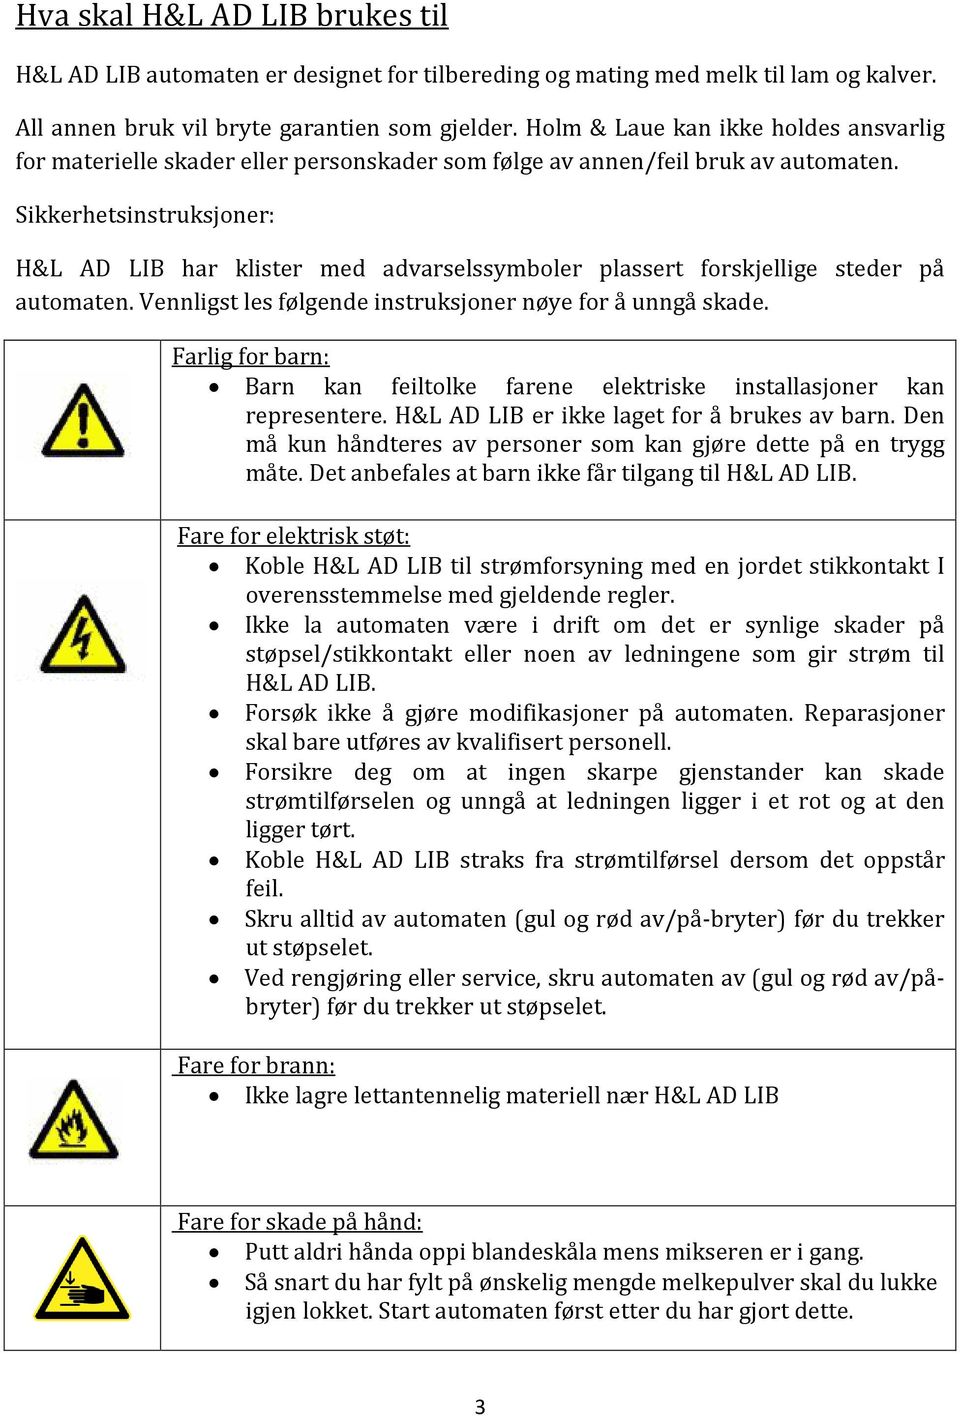 Sikkerhetsinstruksjoner: H&L AD LIB har klister med advarselssymboler plassert forskjellige steder på automaten. Vennligst les følgende instruksjoner nøye for å unngå skade.